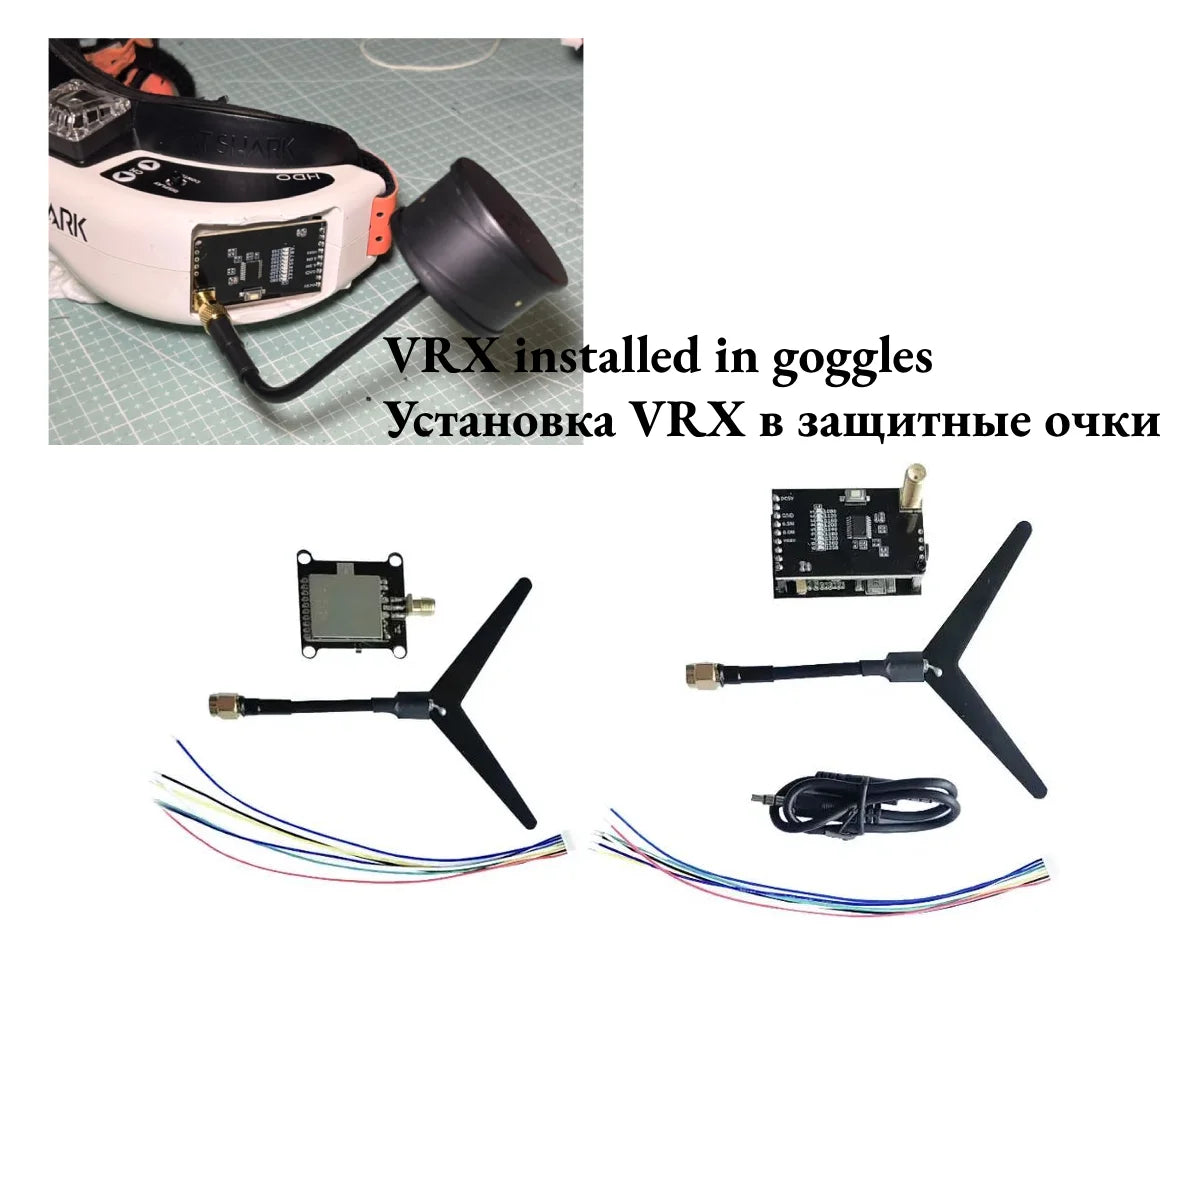 1.2GHz 2000mW 1600mW VTX / VRX-1G3-V2, goggles YcTaHOBKa VRX B 3a1HT